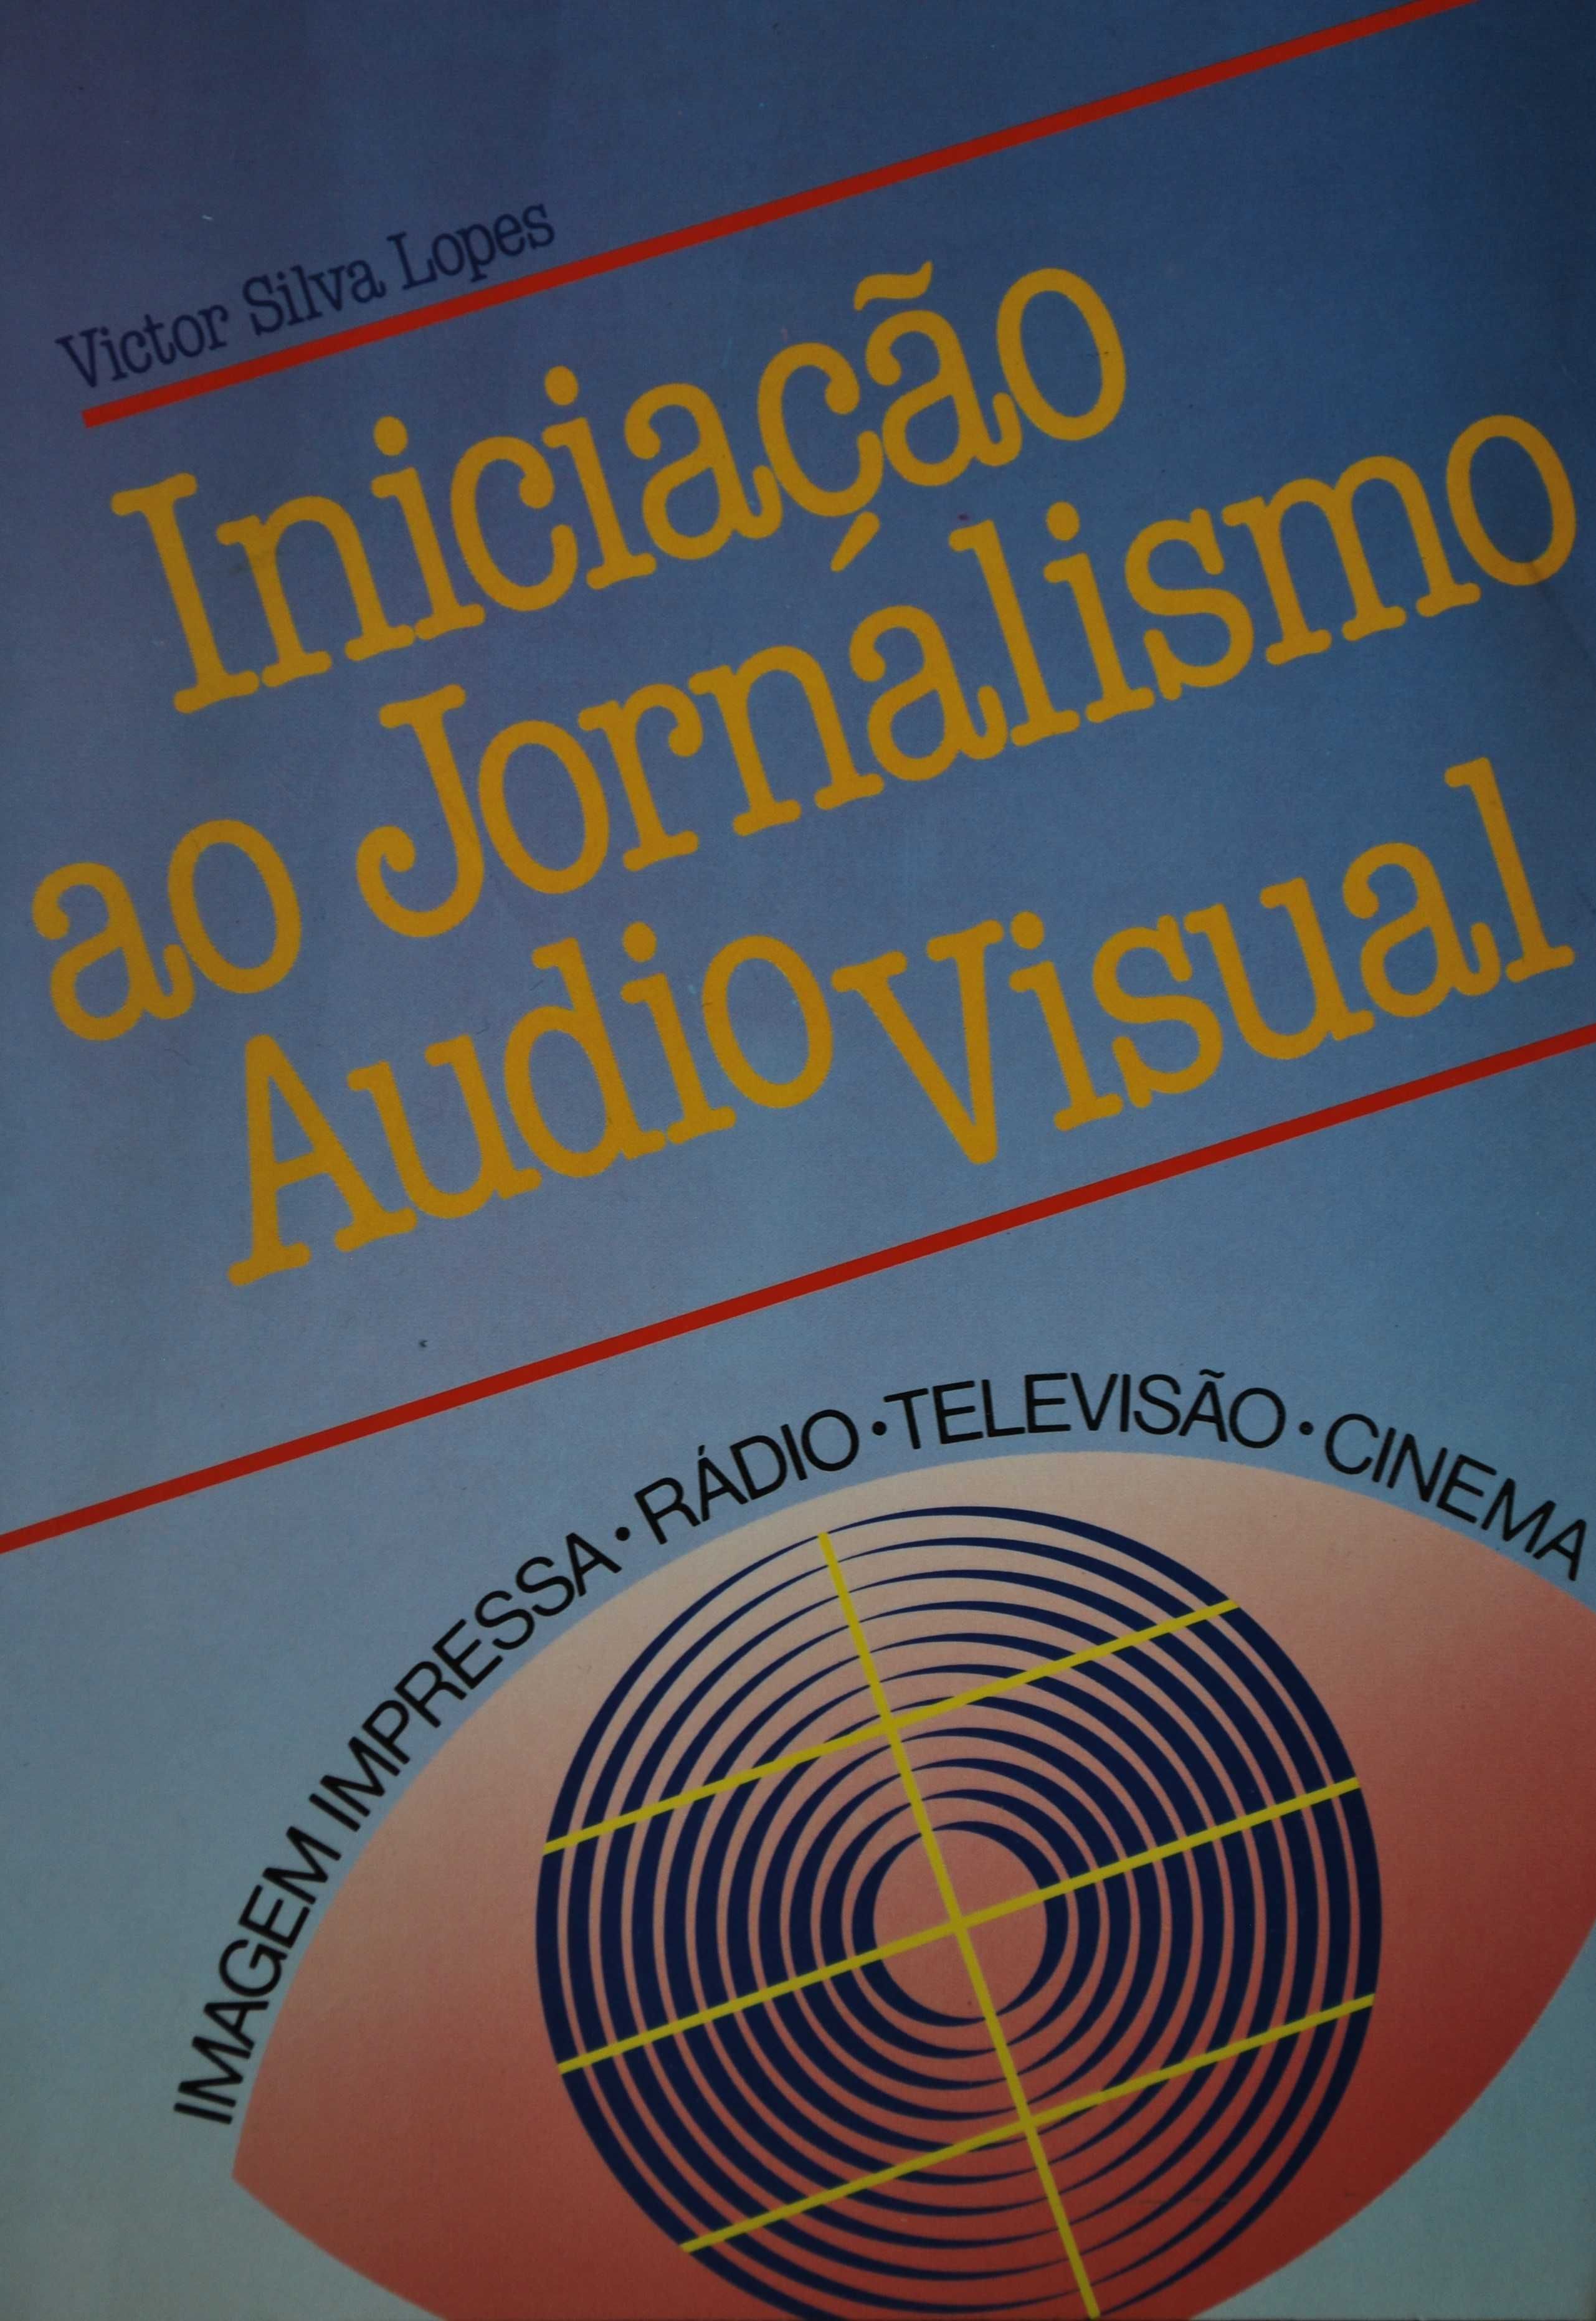 Iniciação Ao Jornalismo Audio Visual de Victor Silva Lopes